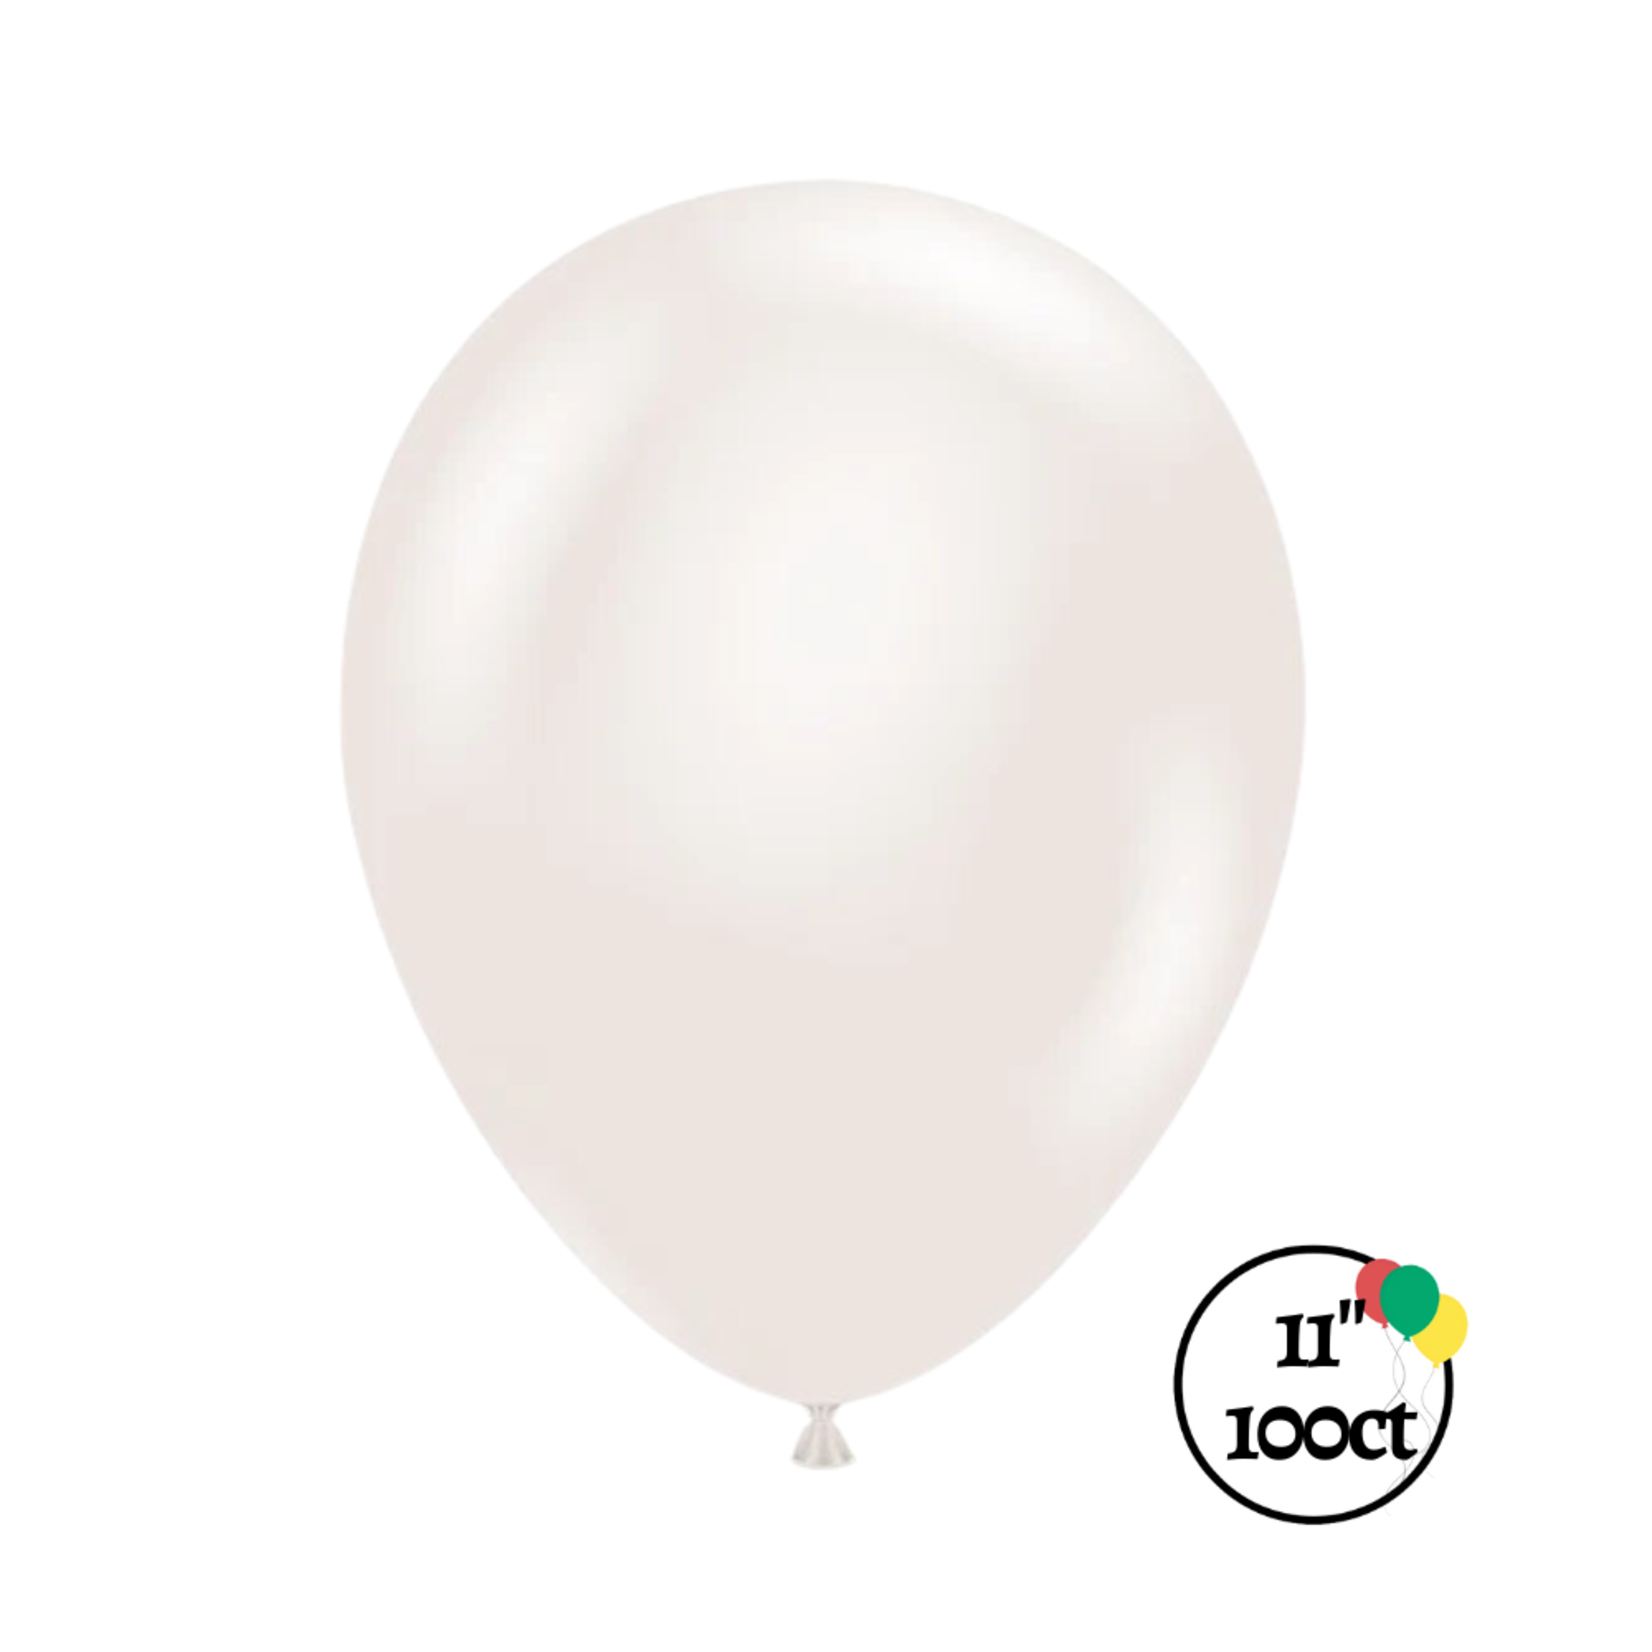 Tuftex Tuftex 11" Sugar 100ct Balloon